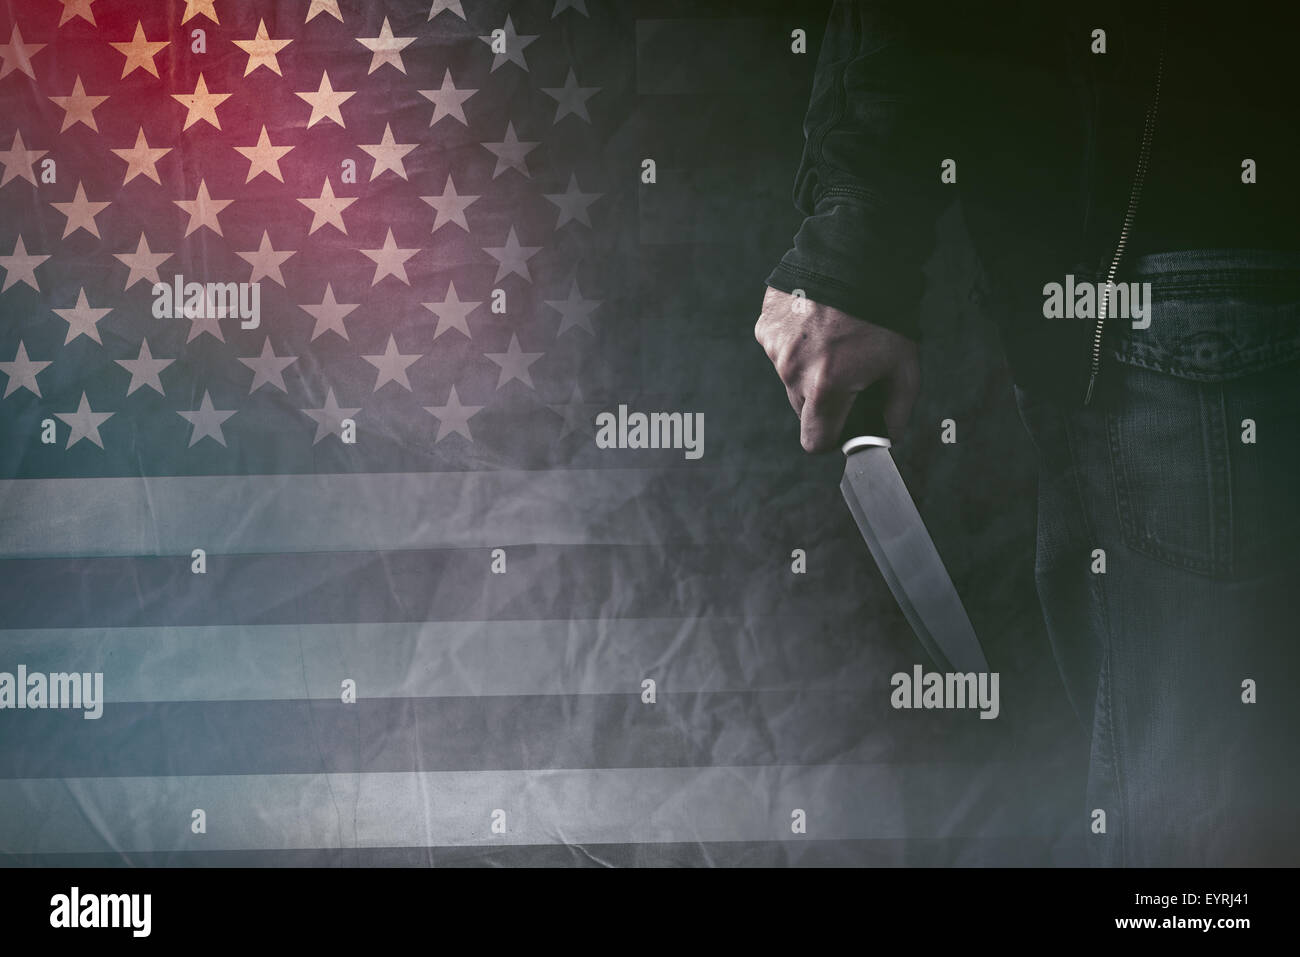 Tueur en série américain, homme la main avec un couteau pointu et grunge USA flag en arrière-plan, l'image aux couleurs rétro Banque D'Images